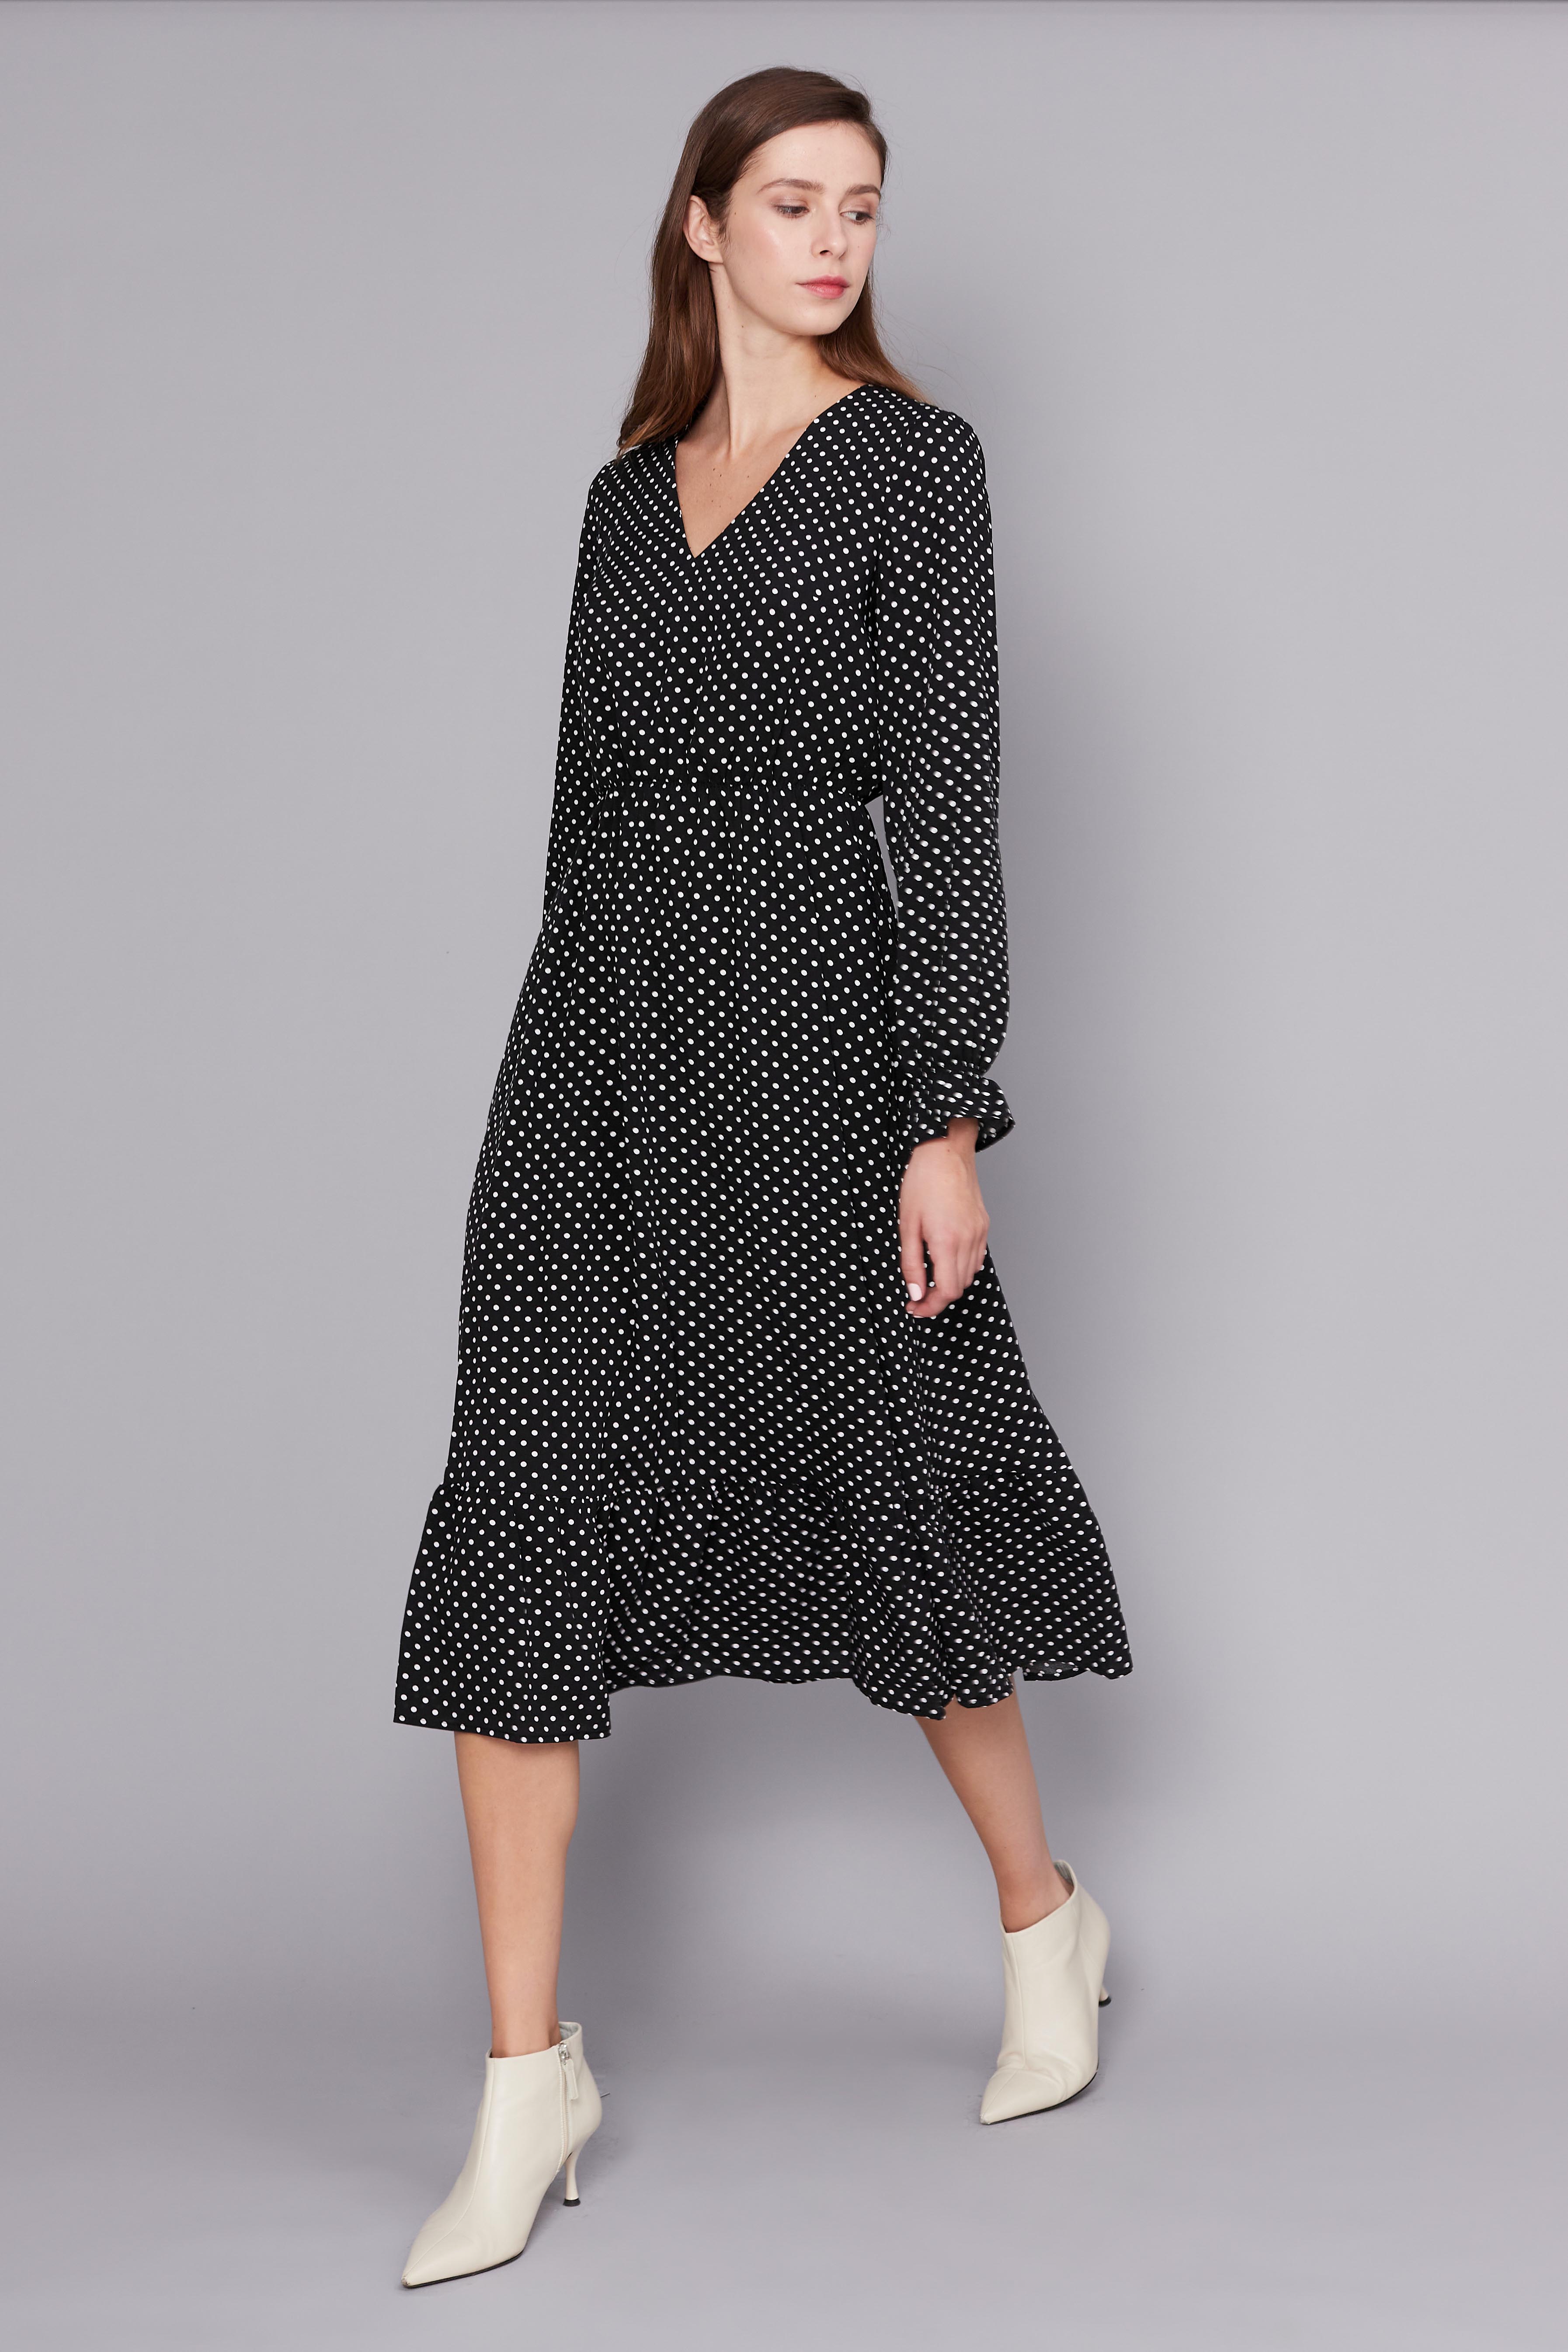 Black polka dot midi dress, photo 2